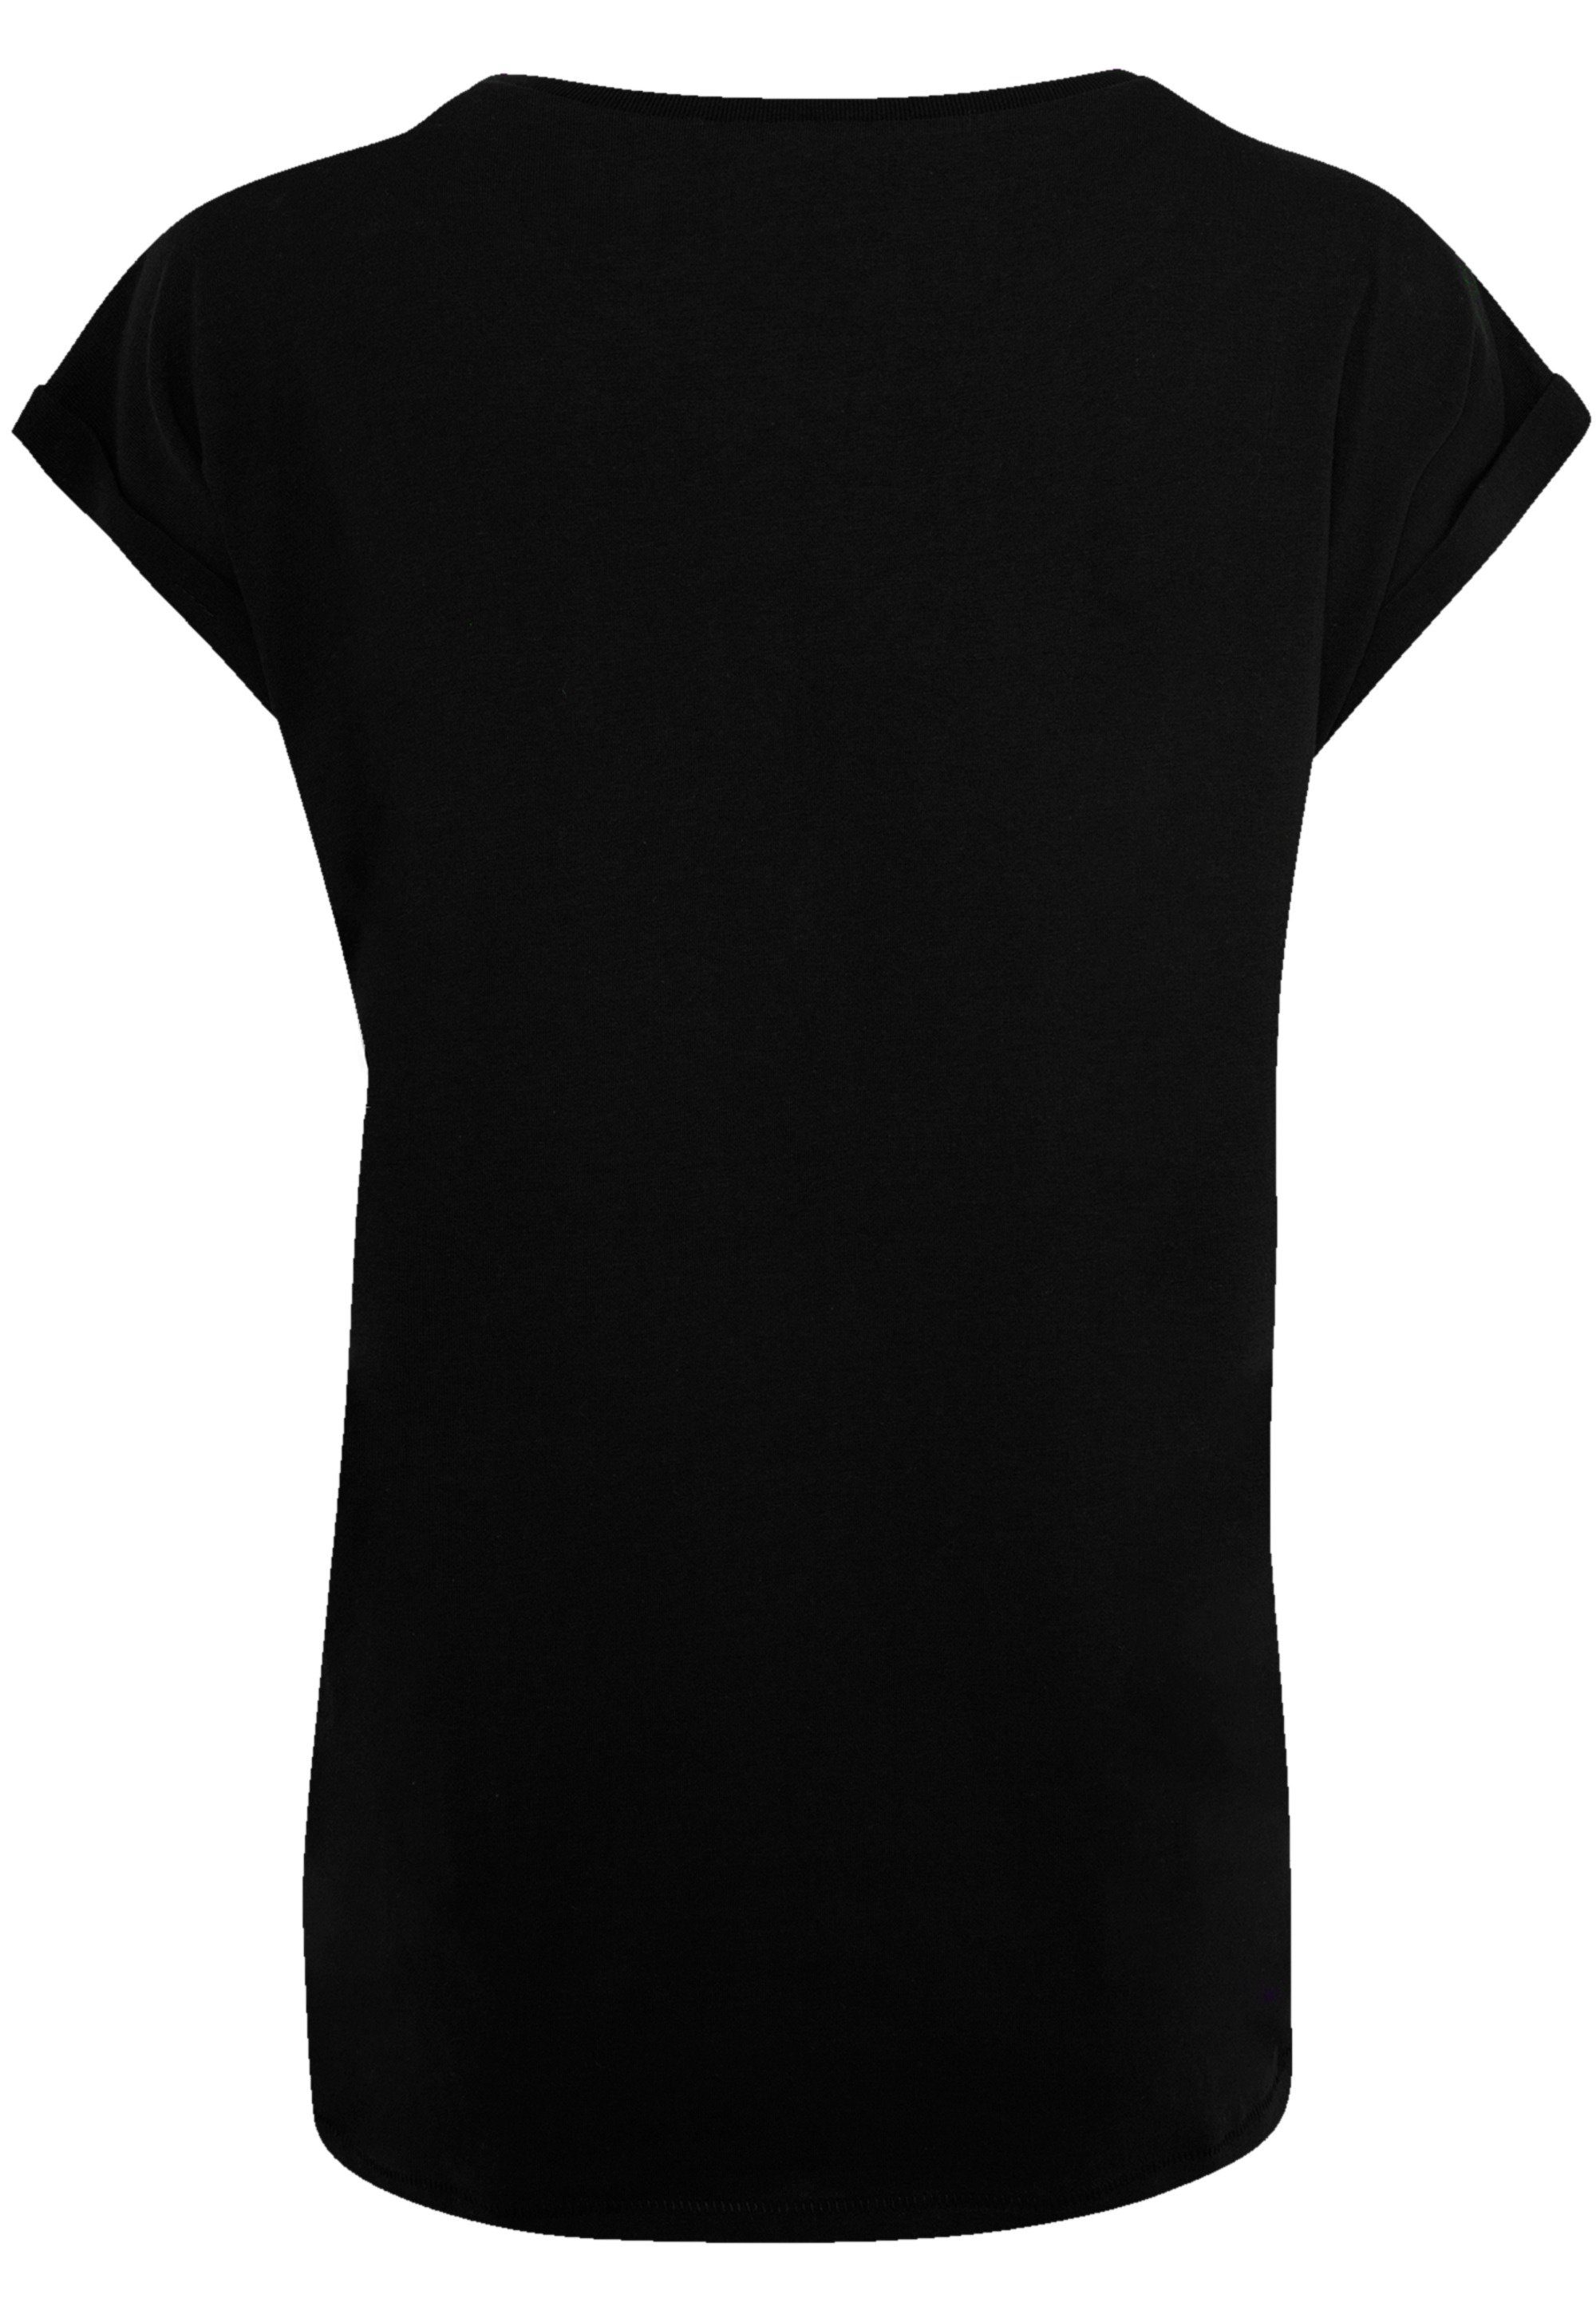 Offiziell Demon Qualität, F4NT4STIC lizenziertes Hard Premium Kiss T-Shirt T-Shirt Band Kiss Rock